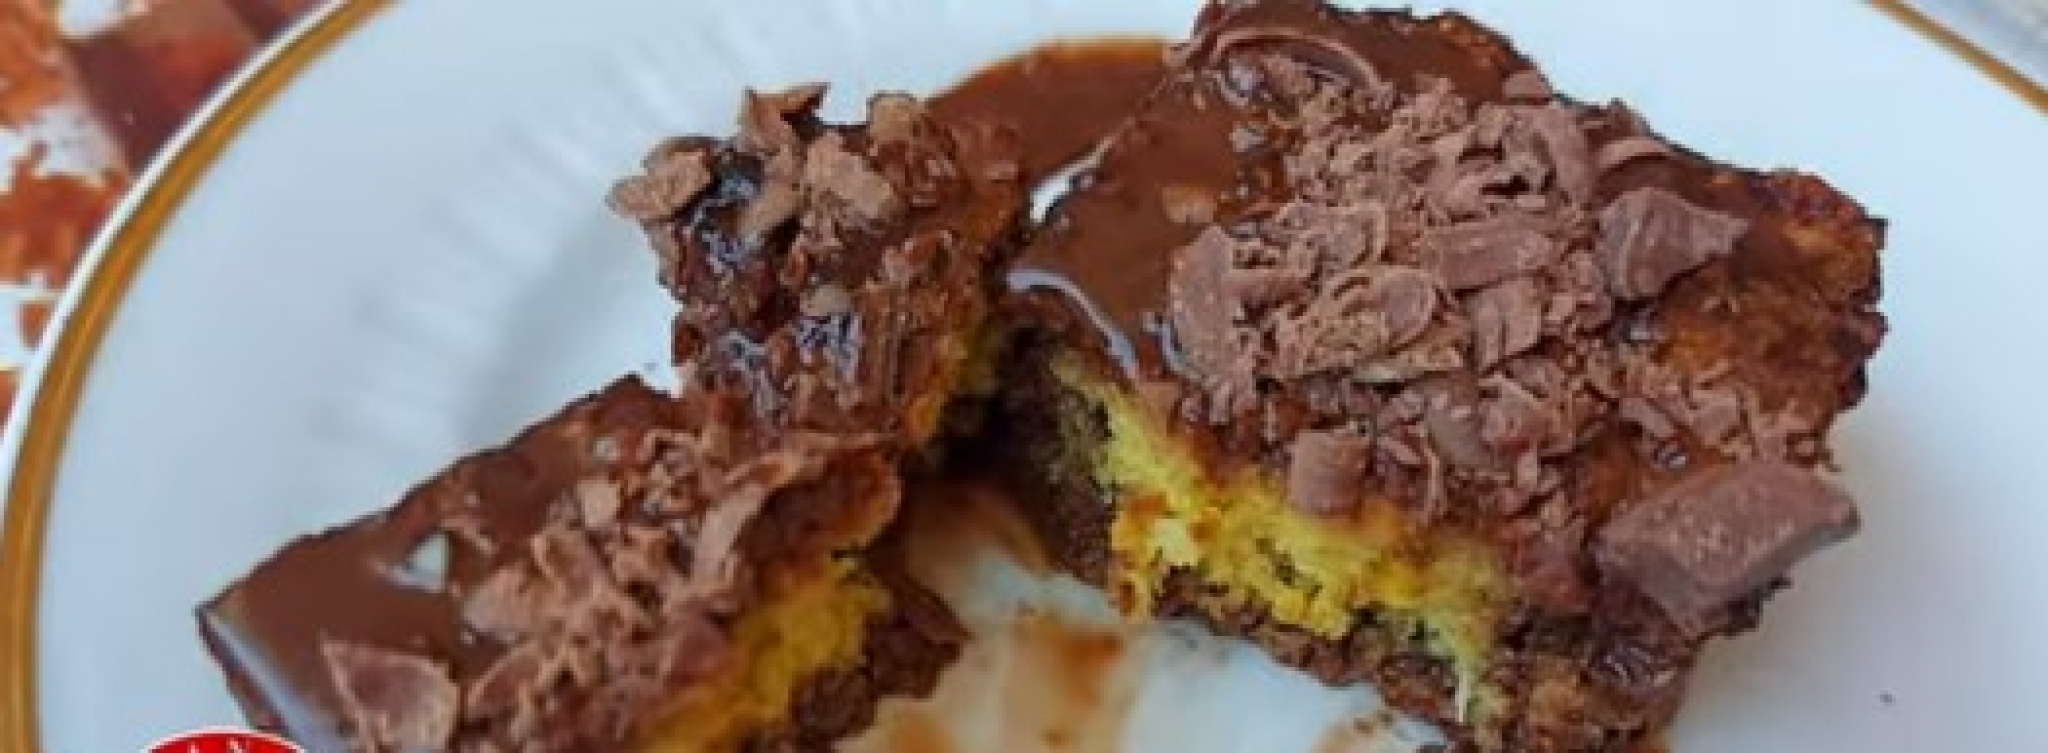 POSLASTICA KOJA ĆE VAM ULEPŠATI DAN Fantastičan čokoladni kolač, osetite pravi užitak (VIDEO)